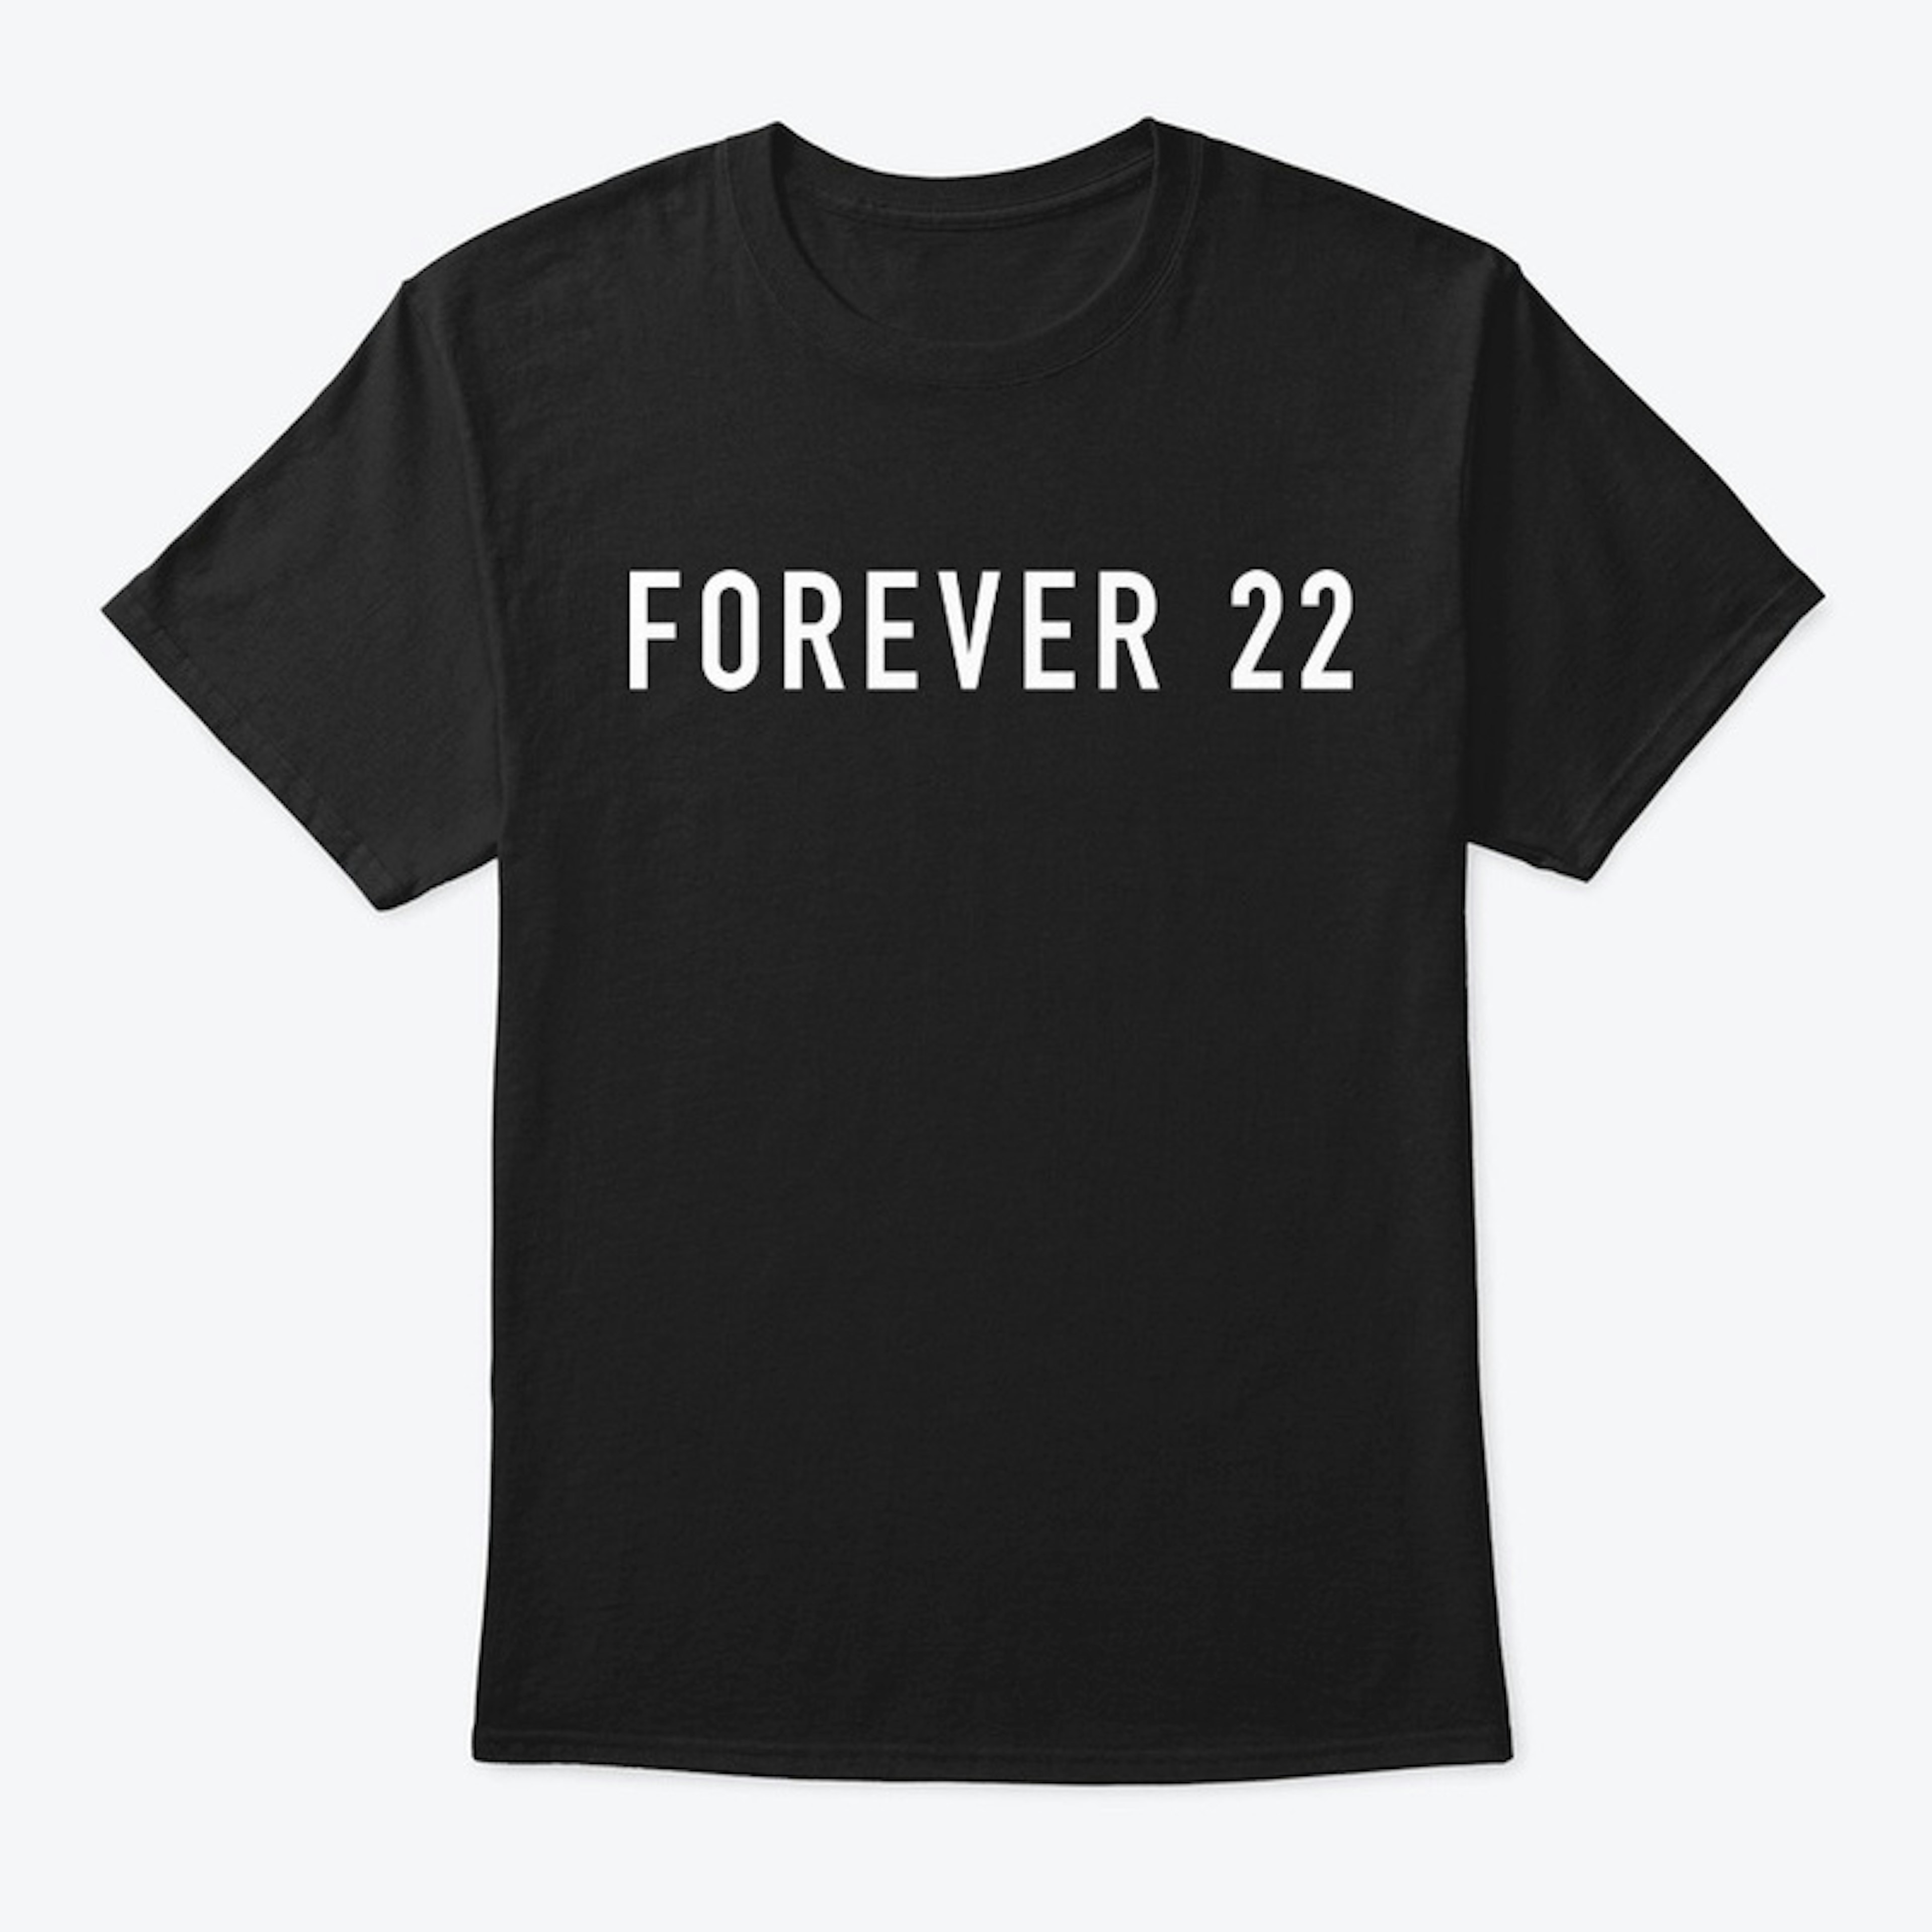 Forever 22 white